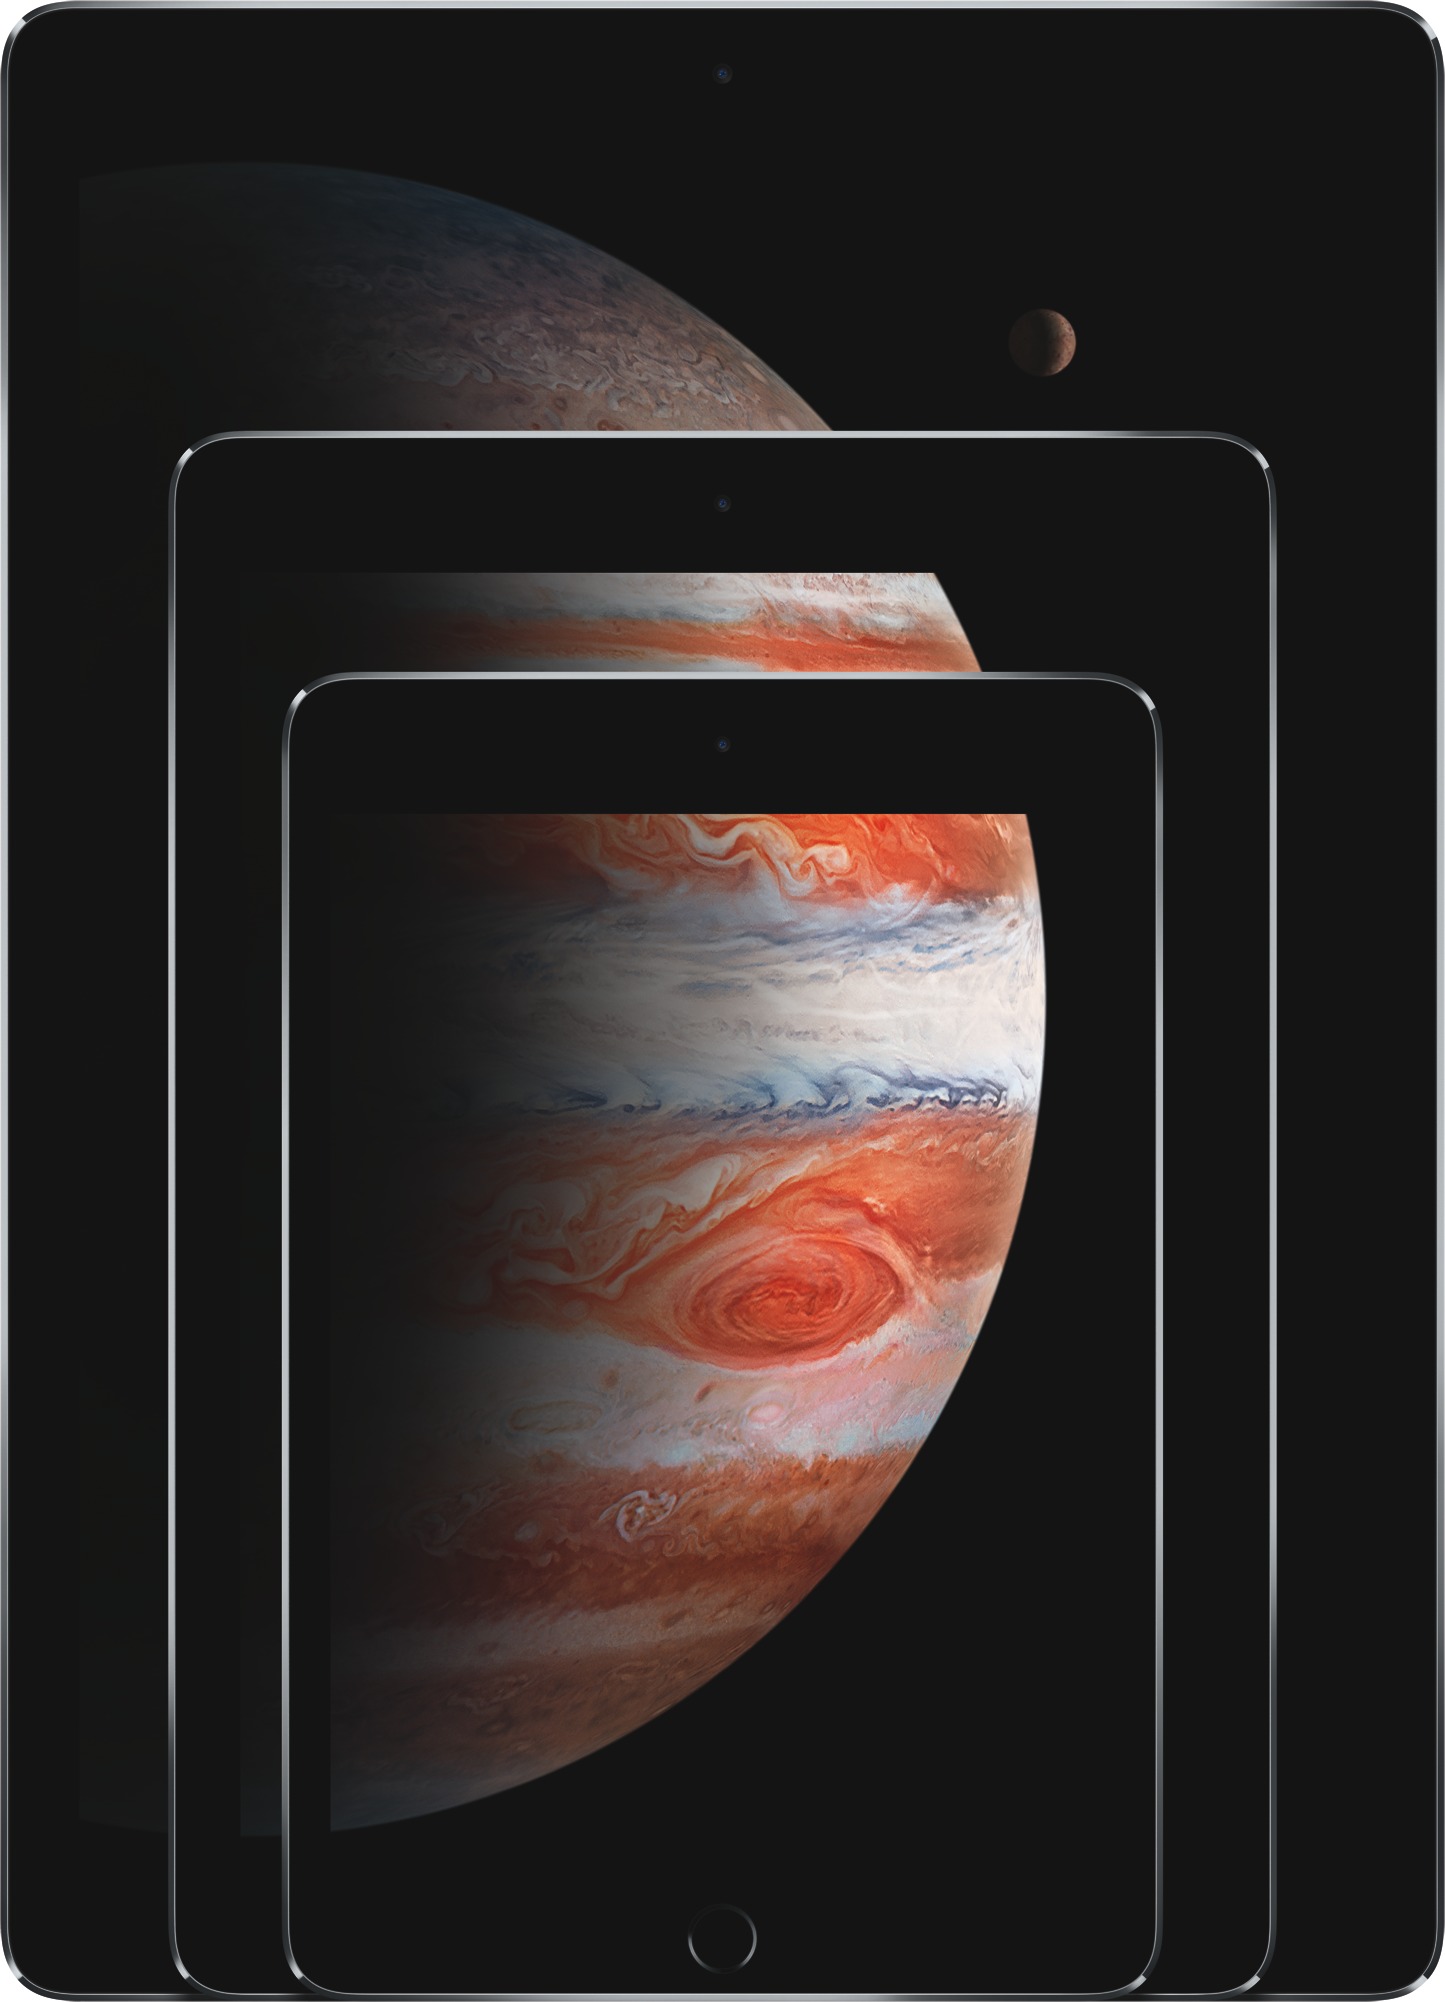 Verklig storlek bild av  Jämför iPad modeller .